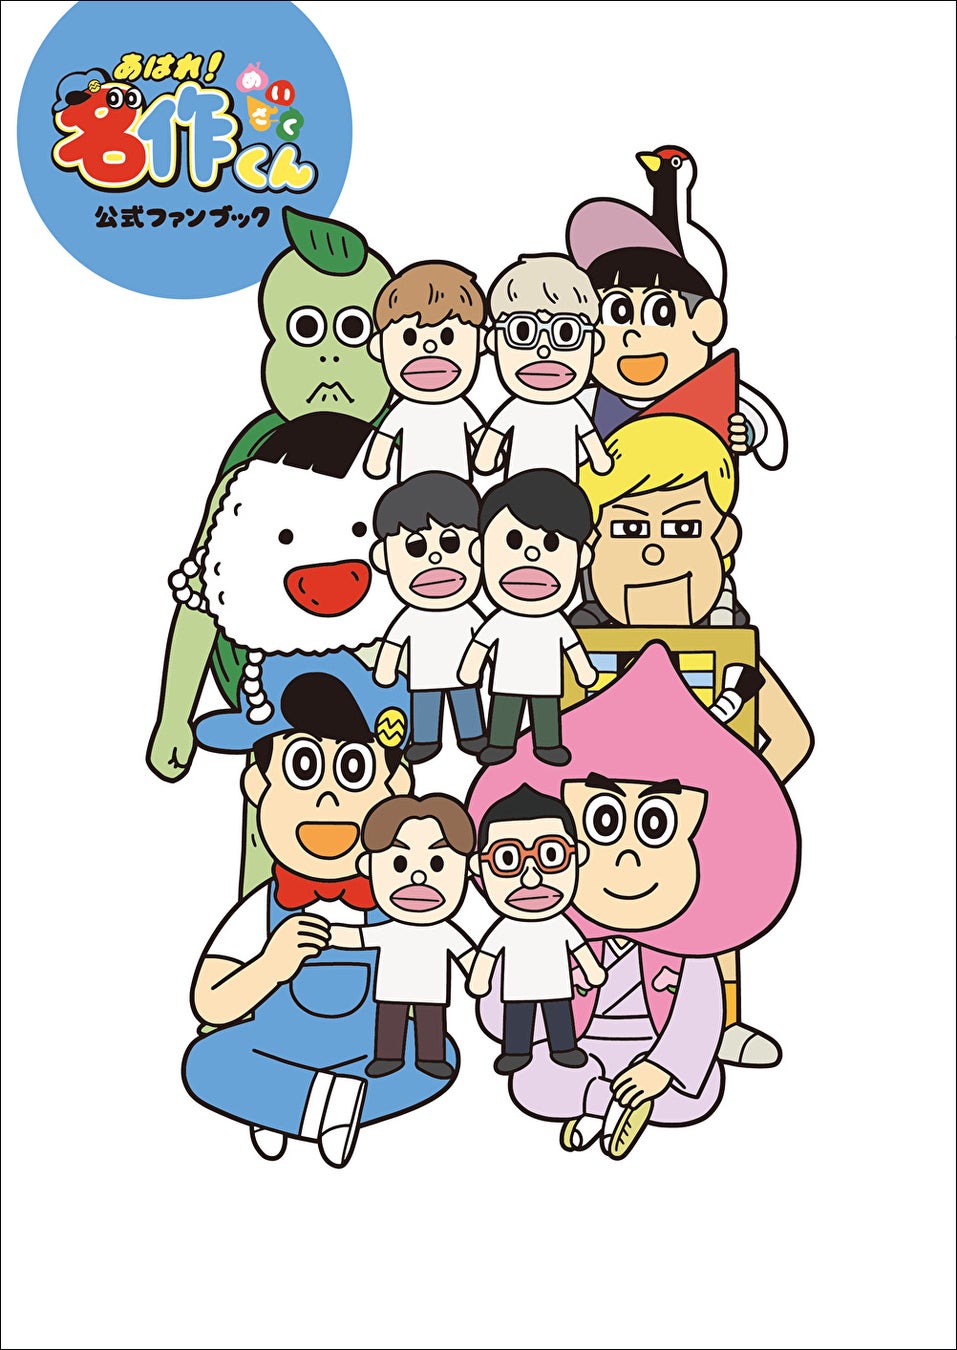 gumi、double jump.tokyoおよびナンバーナインと共同で、漫画『左ききのエレン』に登場するストリートアート作品のNFTを販売！